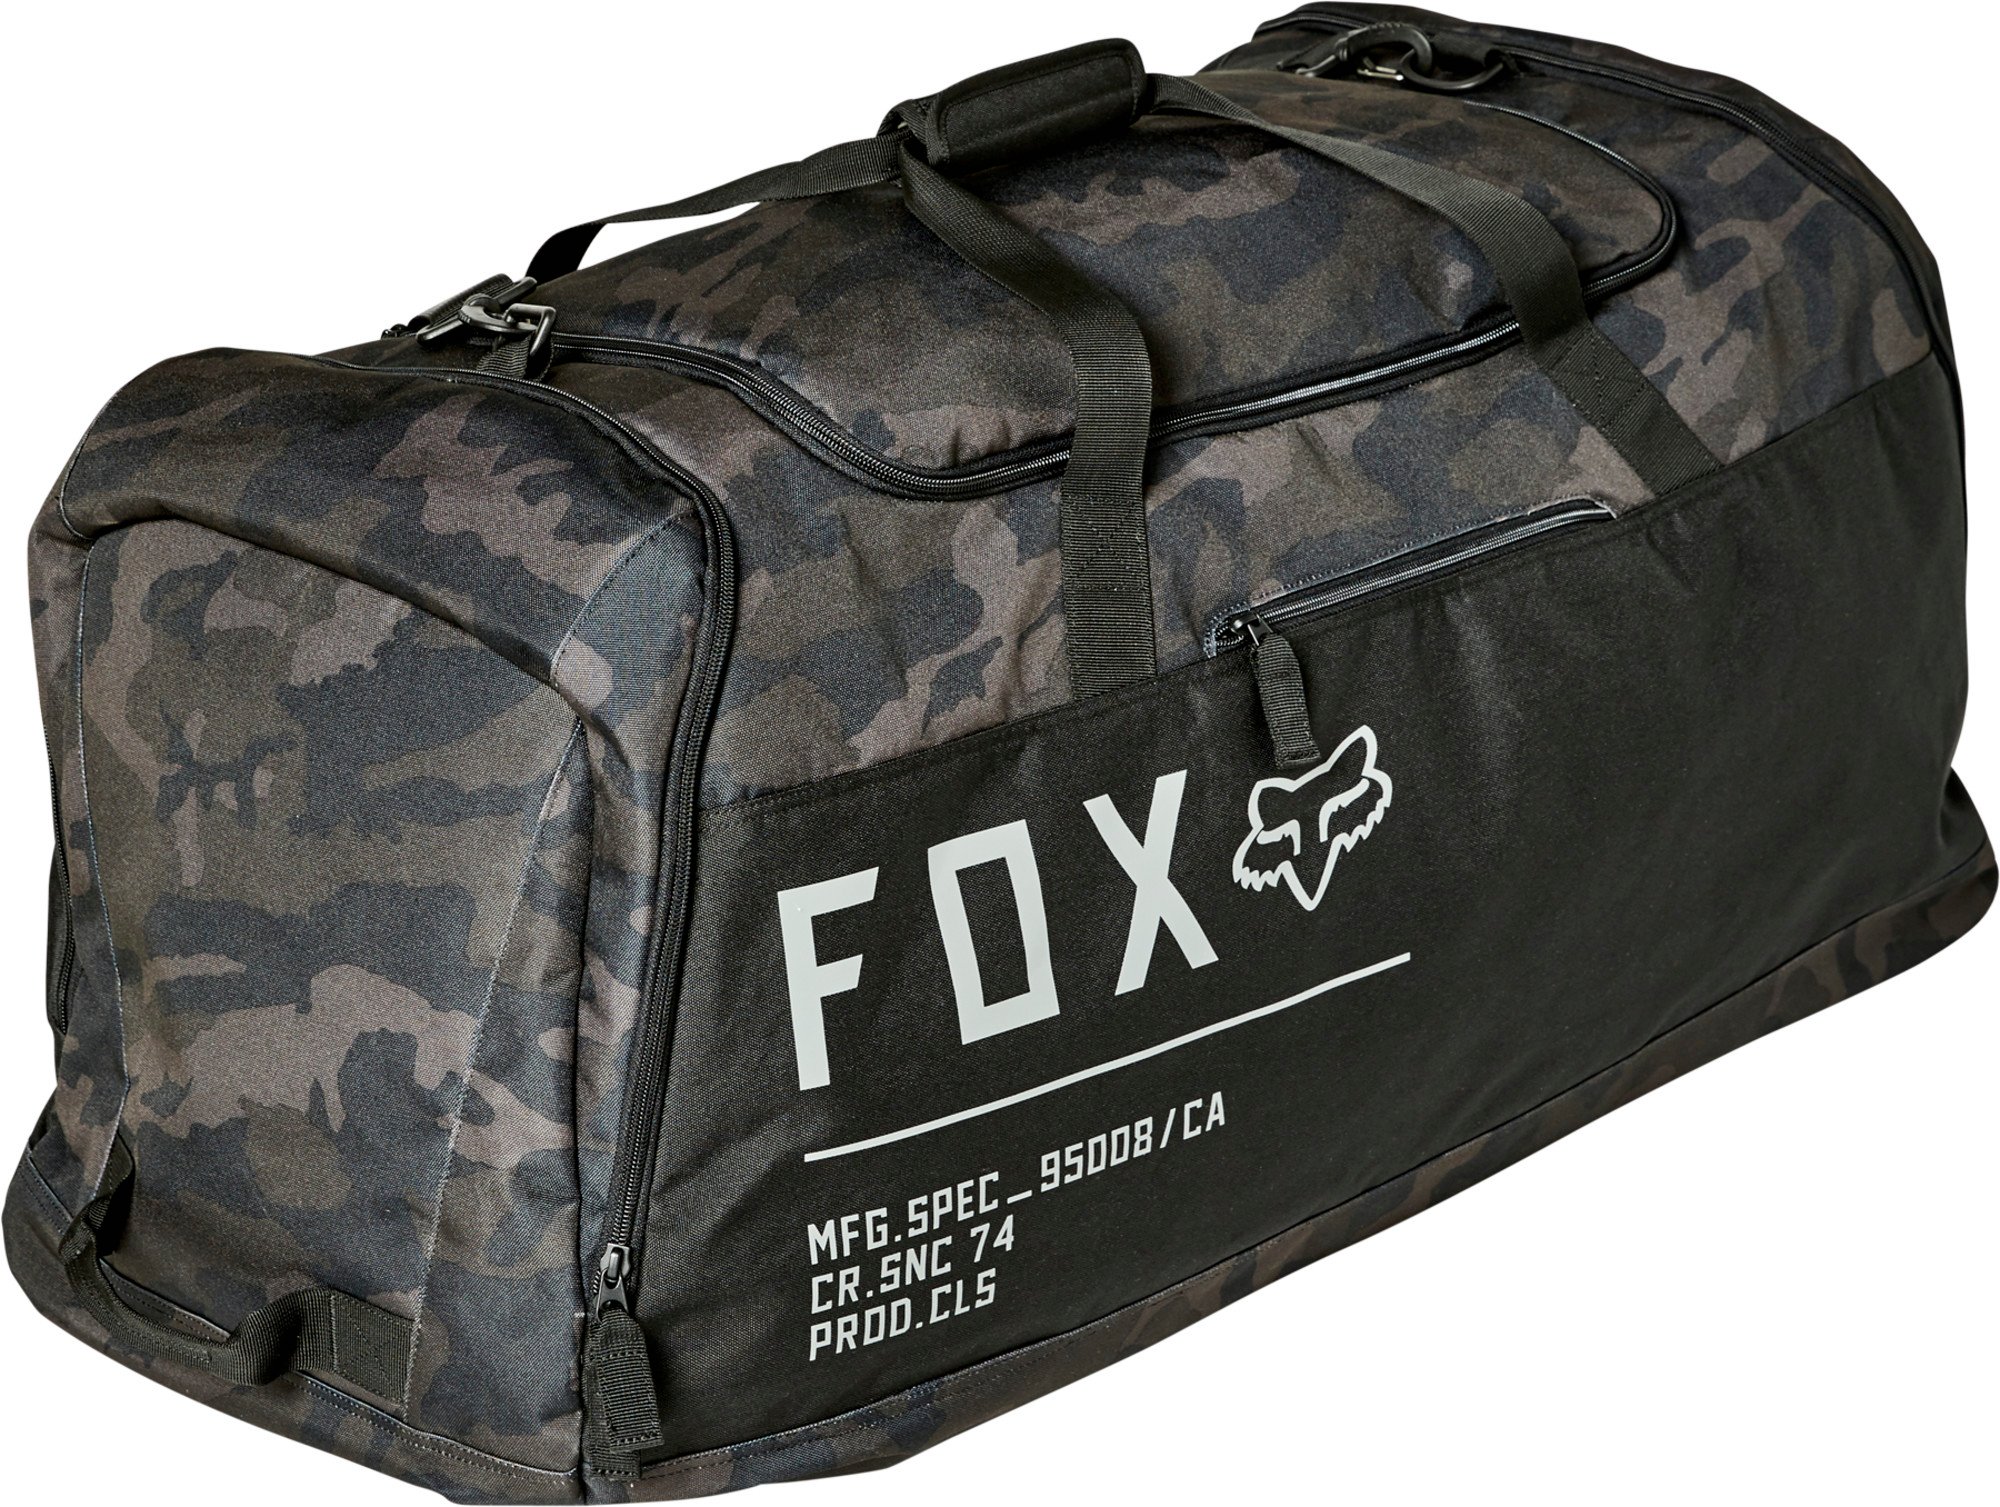 fox racing bags podium 180 gear bags - bags